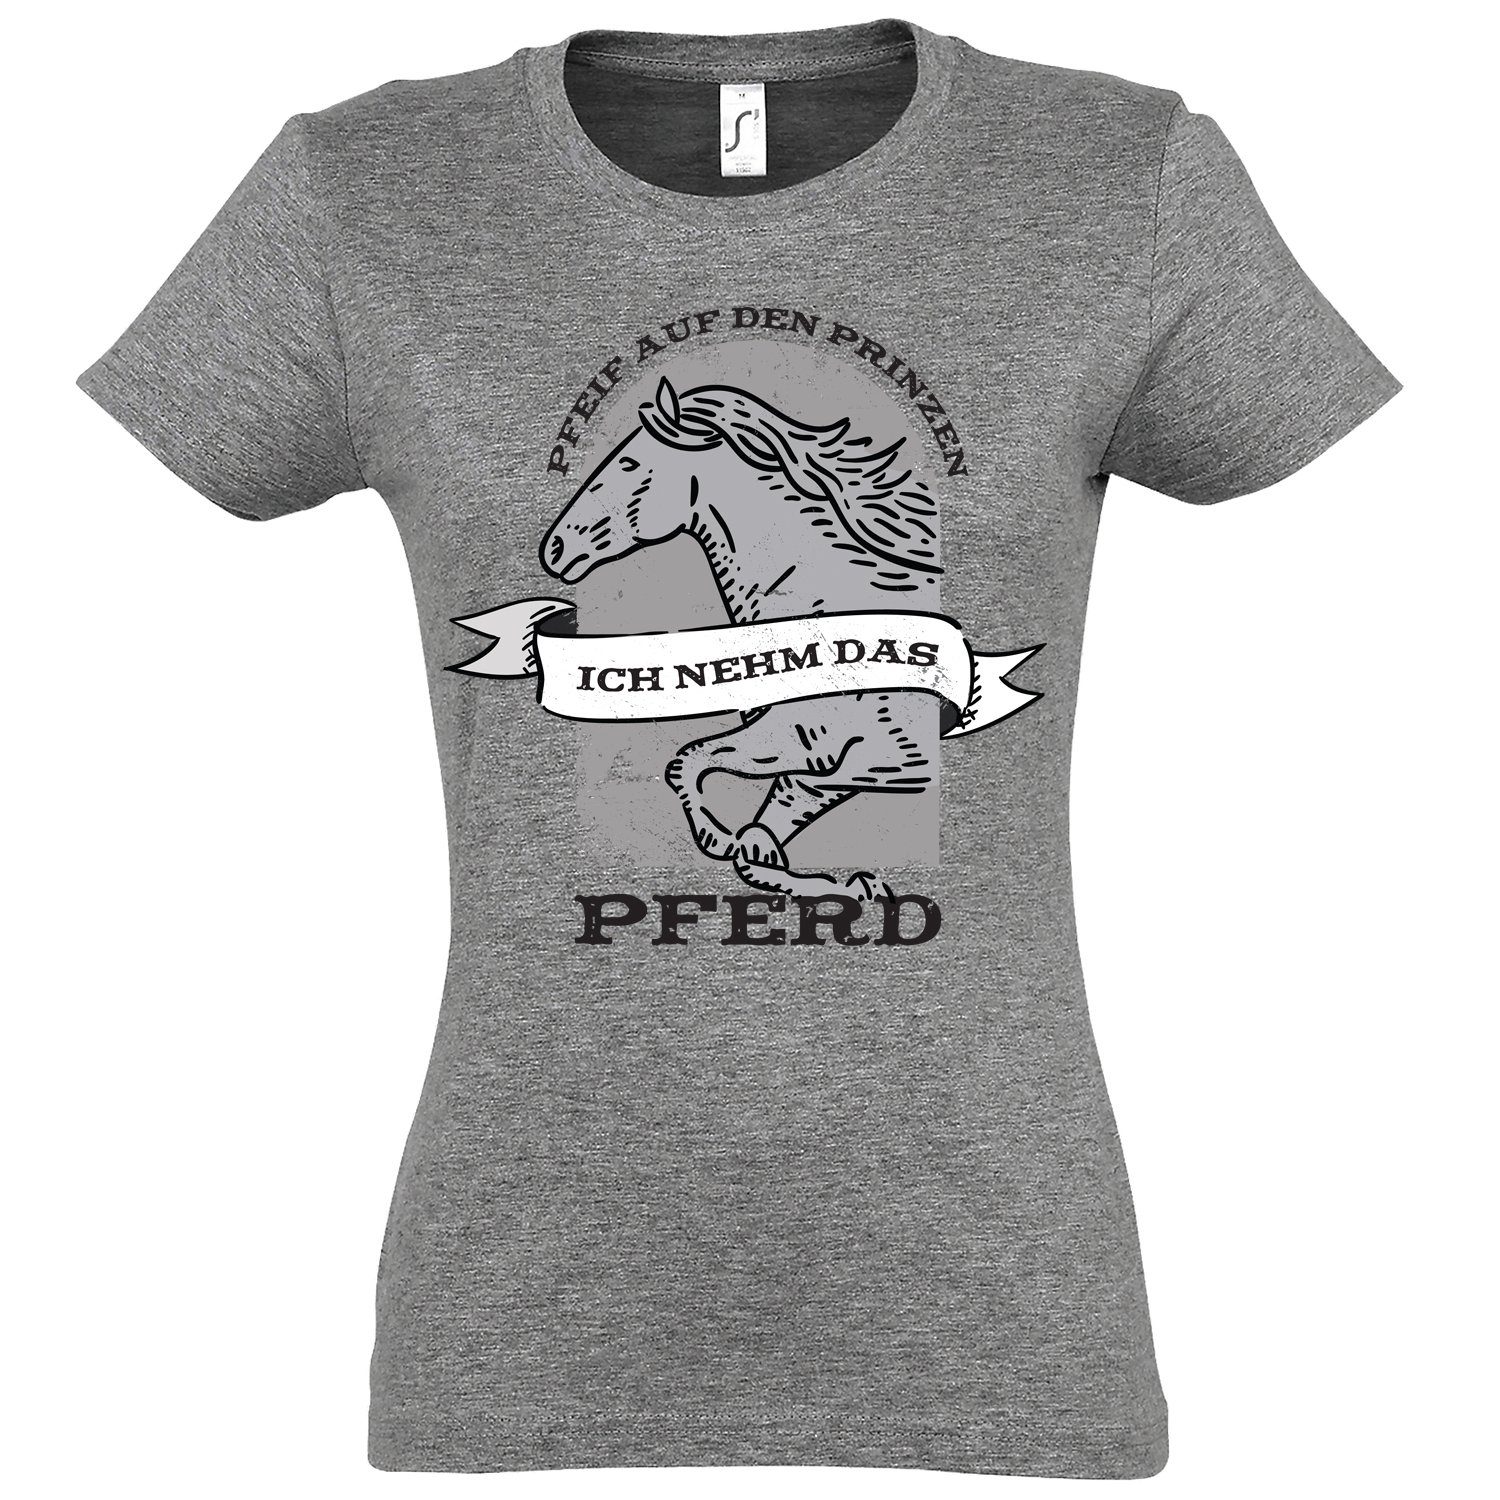 Youth Designz T-Shirt "Pfeif auf den Prinzen, ich nehm das Pferd" Damen T-Shirt mit modischem print Grau